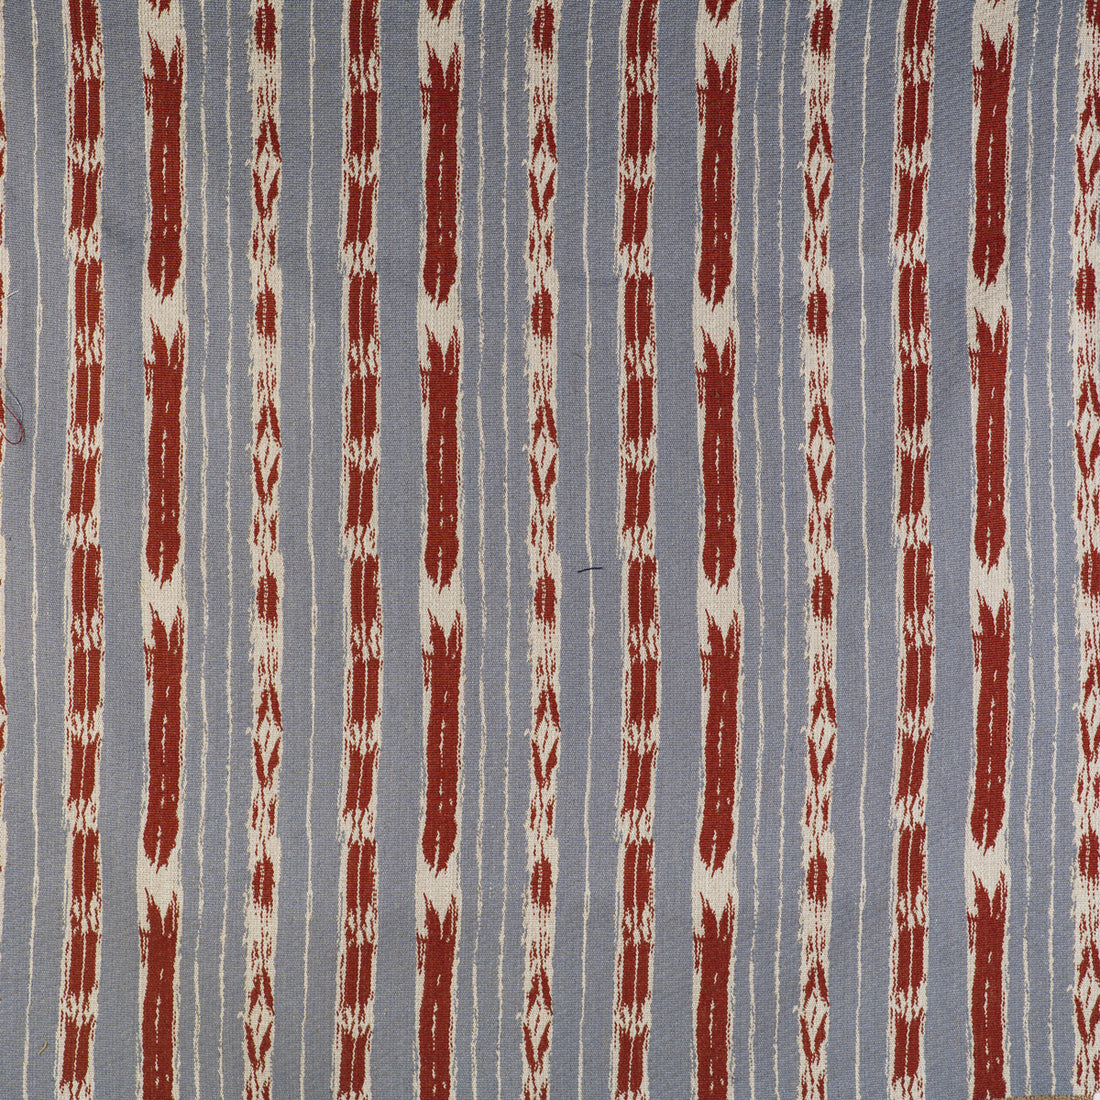 Bandas fabric in azul cielo/rojo color - pattern GDT5497.004.0 - by Gaston y Daniela in the Gaston Libreria collection